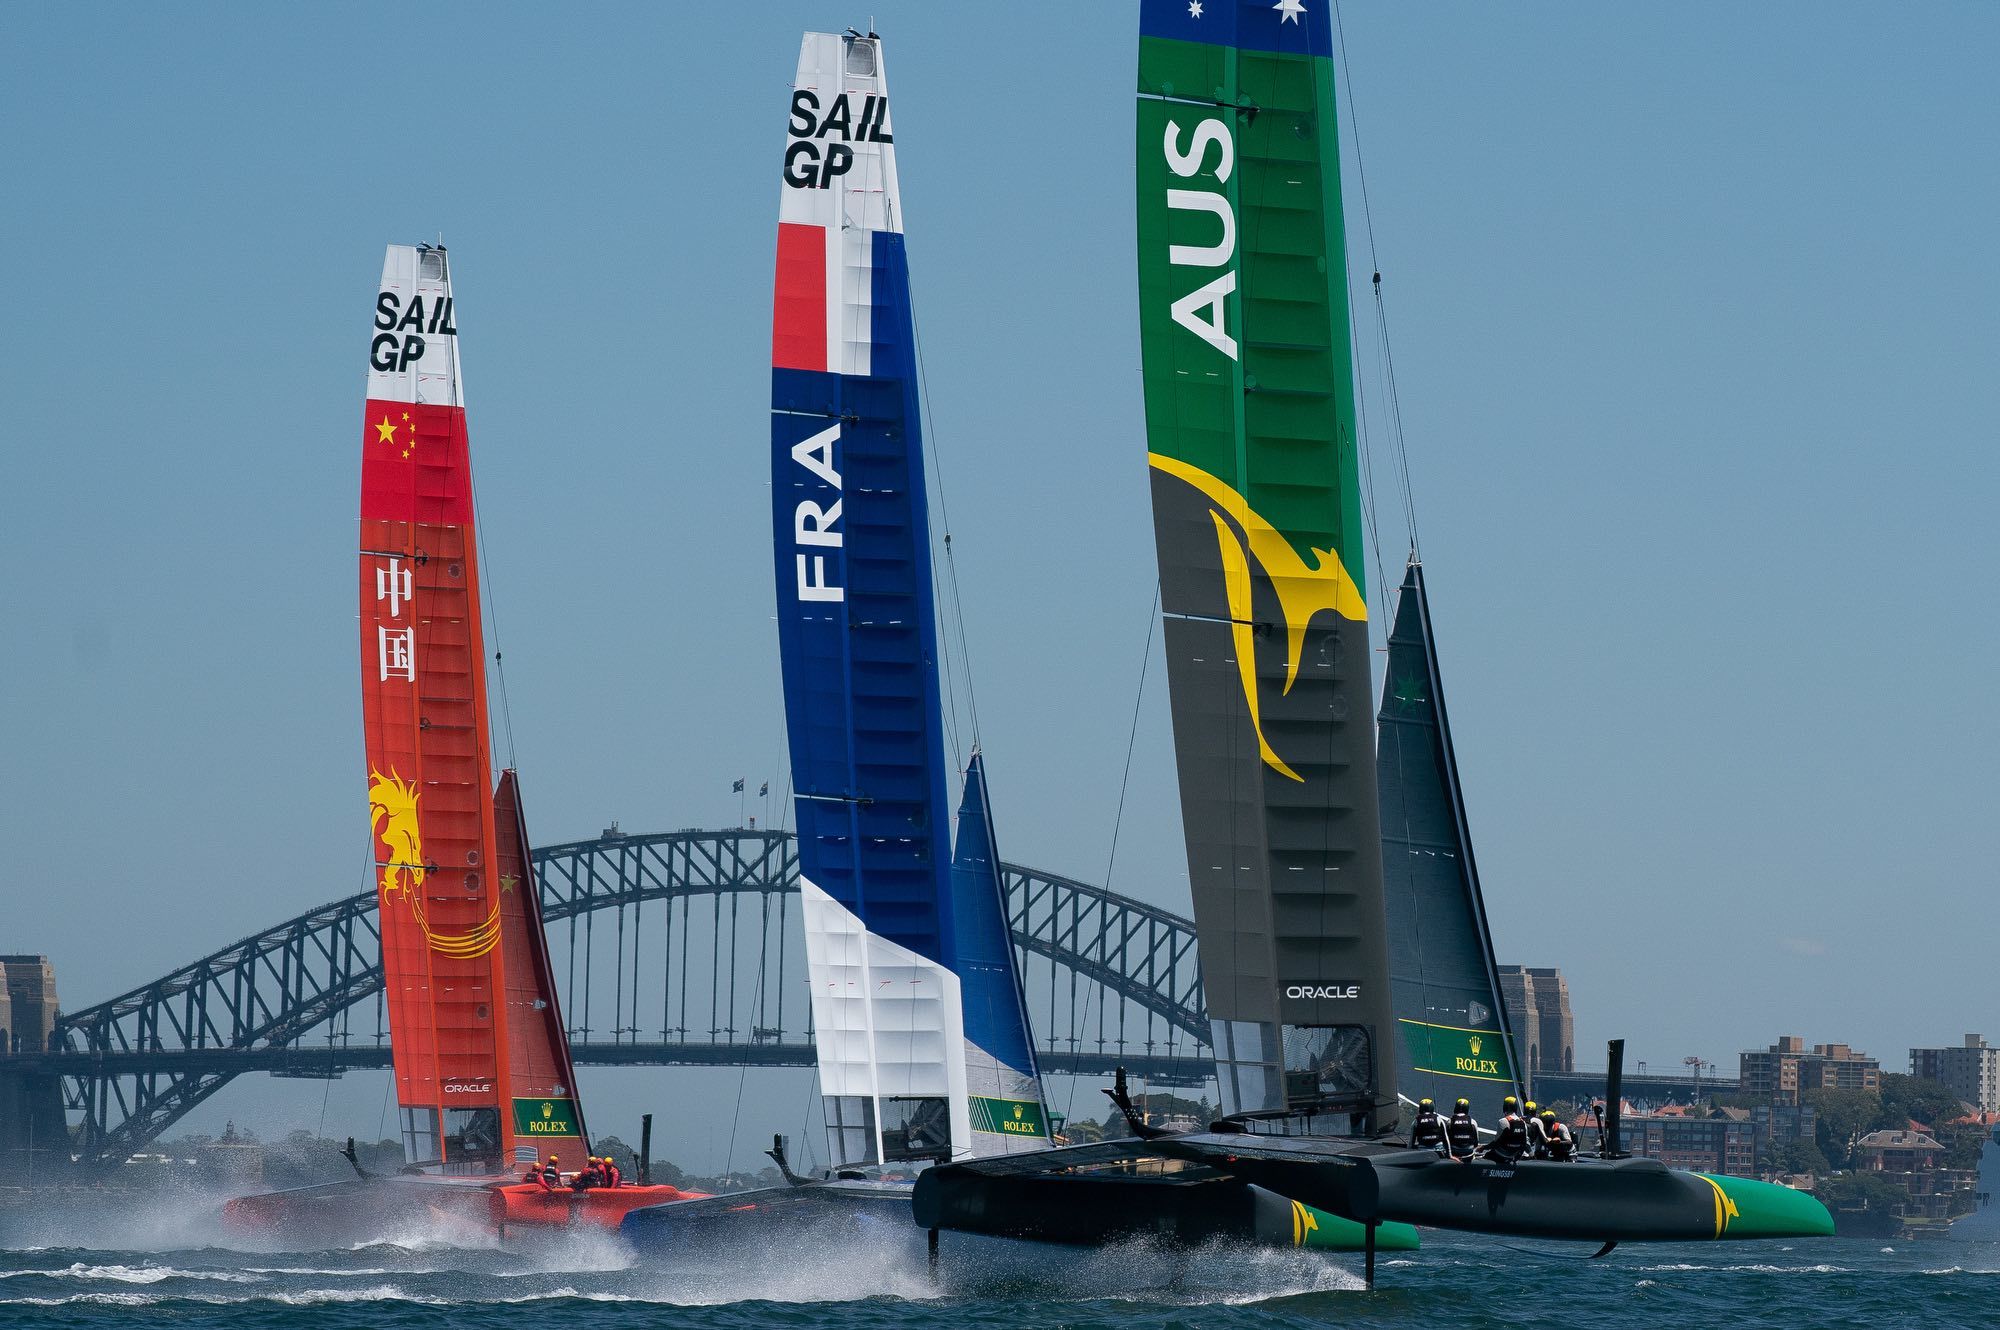 Rolex partner ufficiale del SailGP, esordio a Sydney il 15 febbraio ma la Coppa e’ altro…